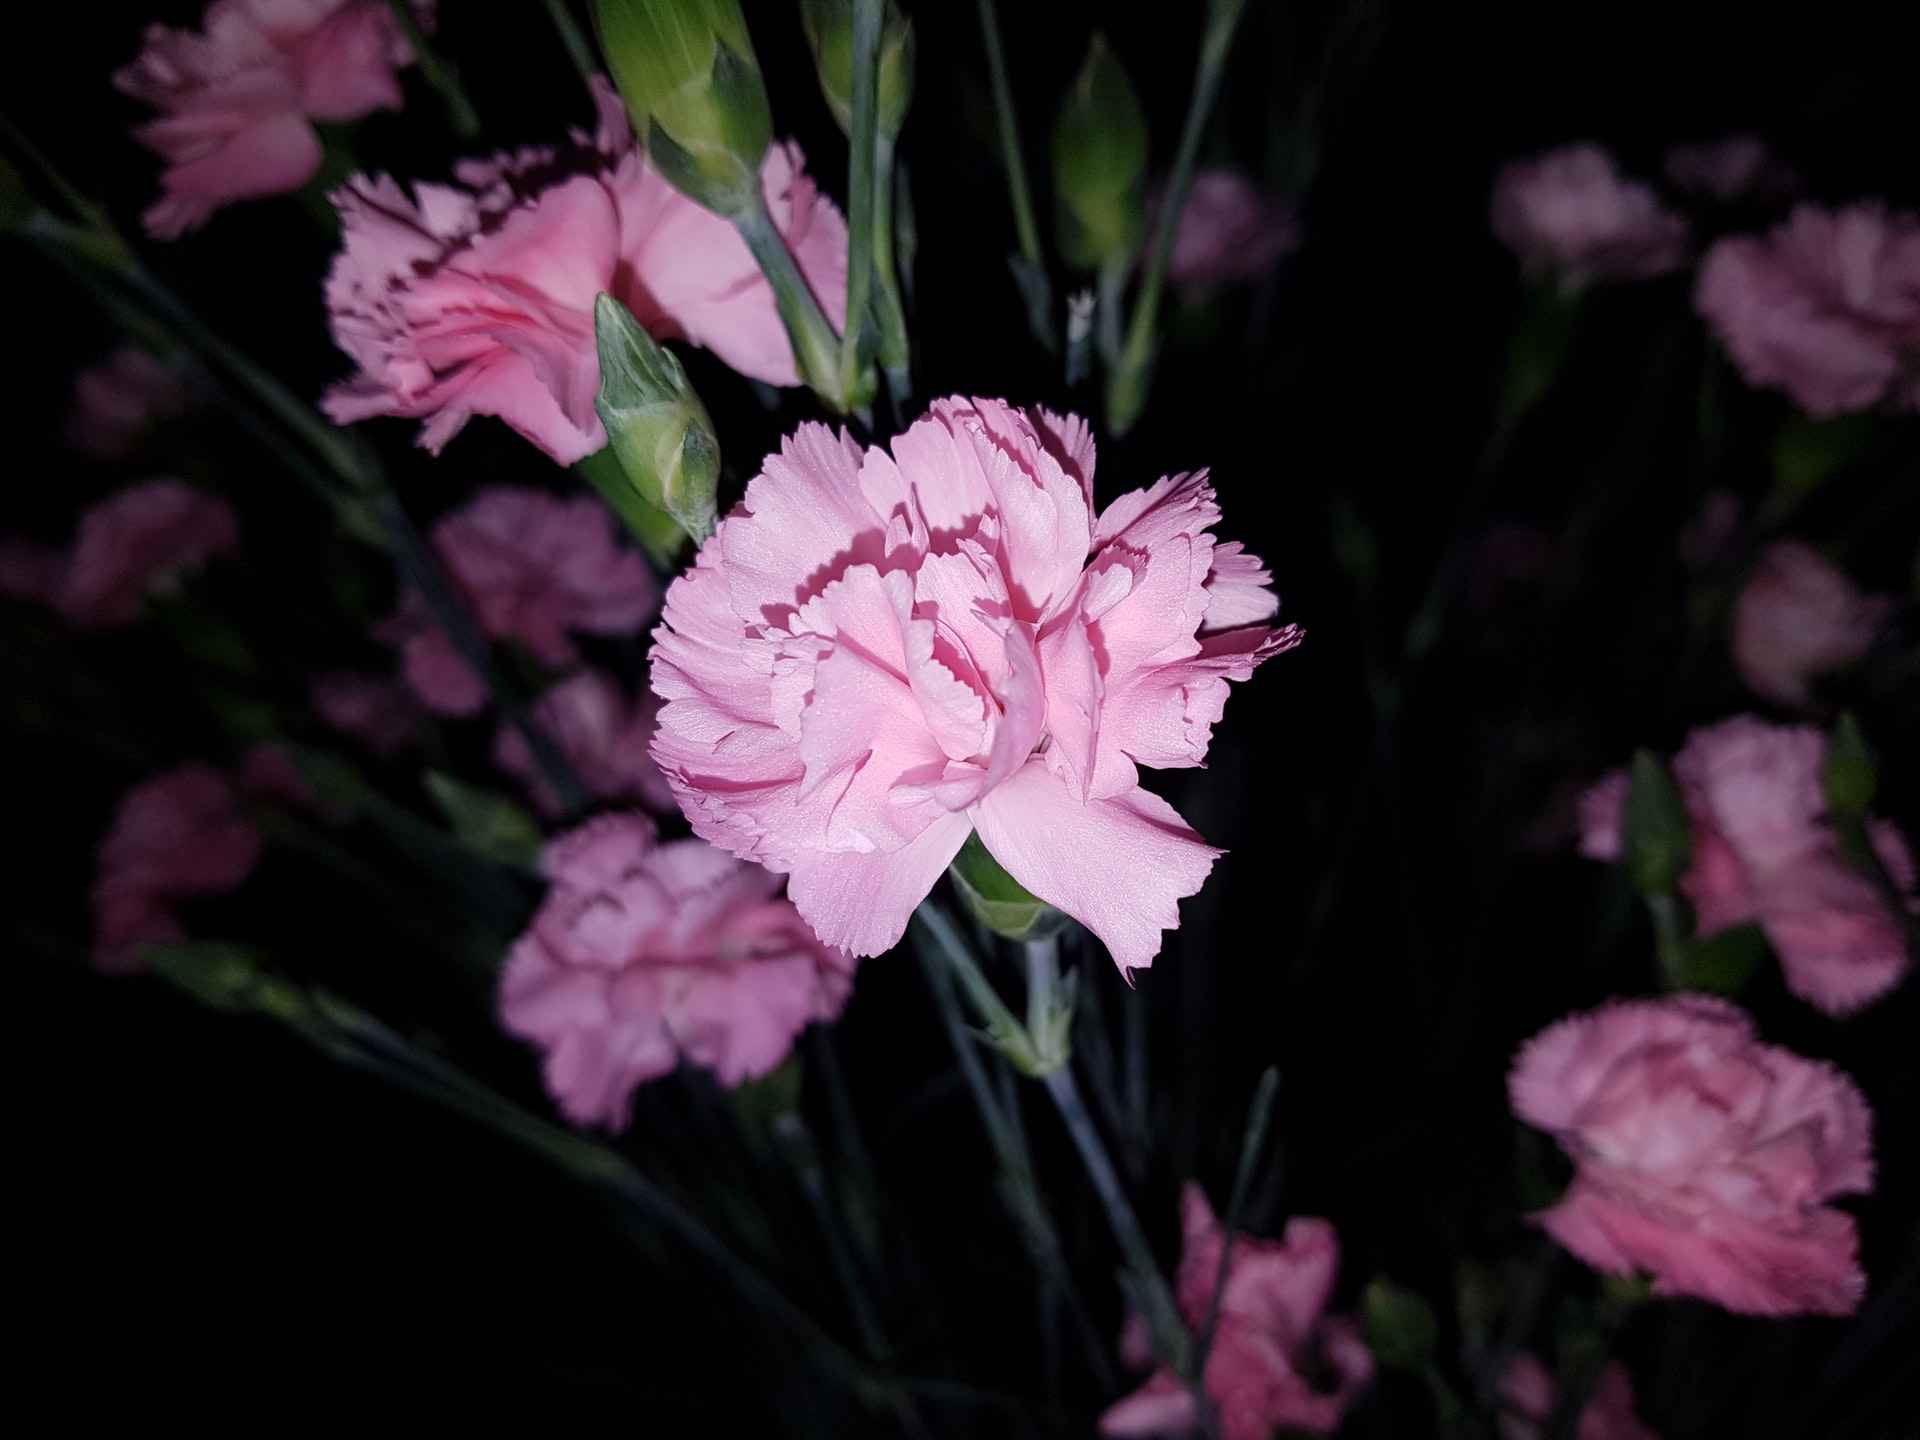 clavel rosa